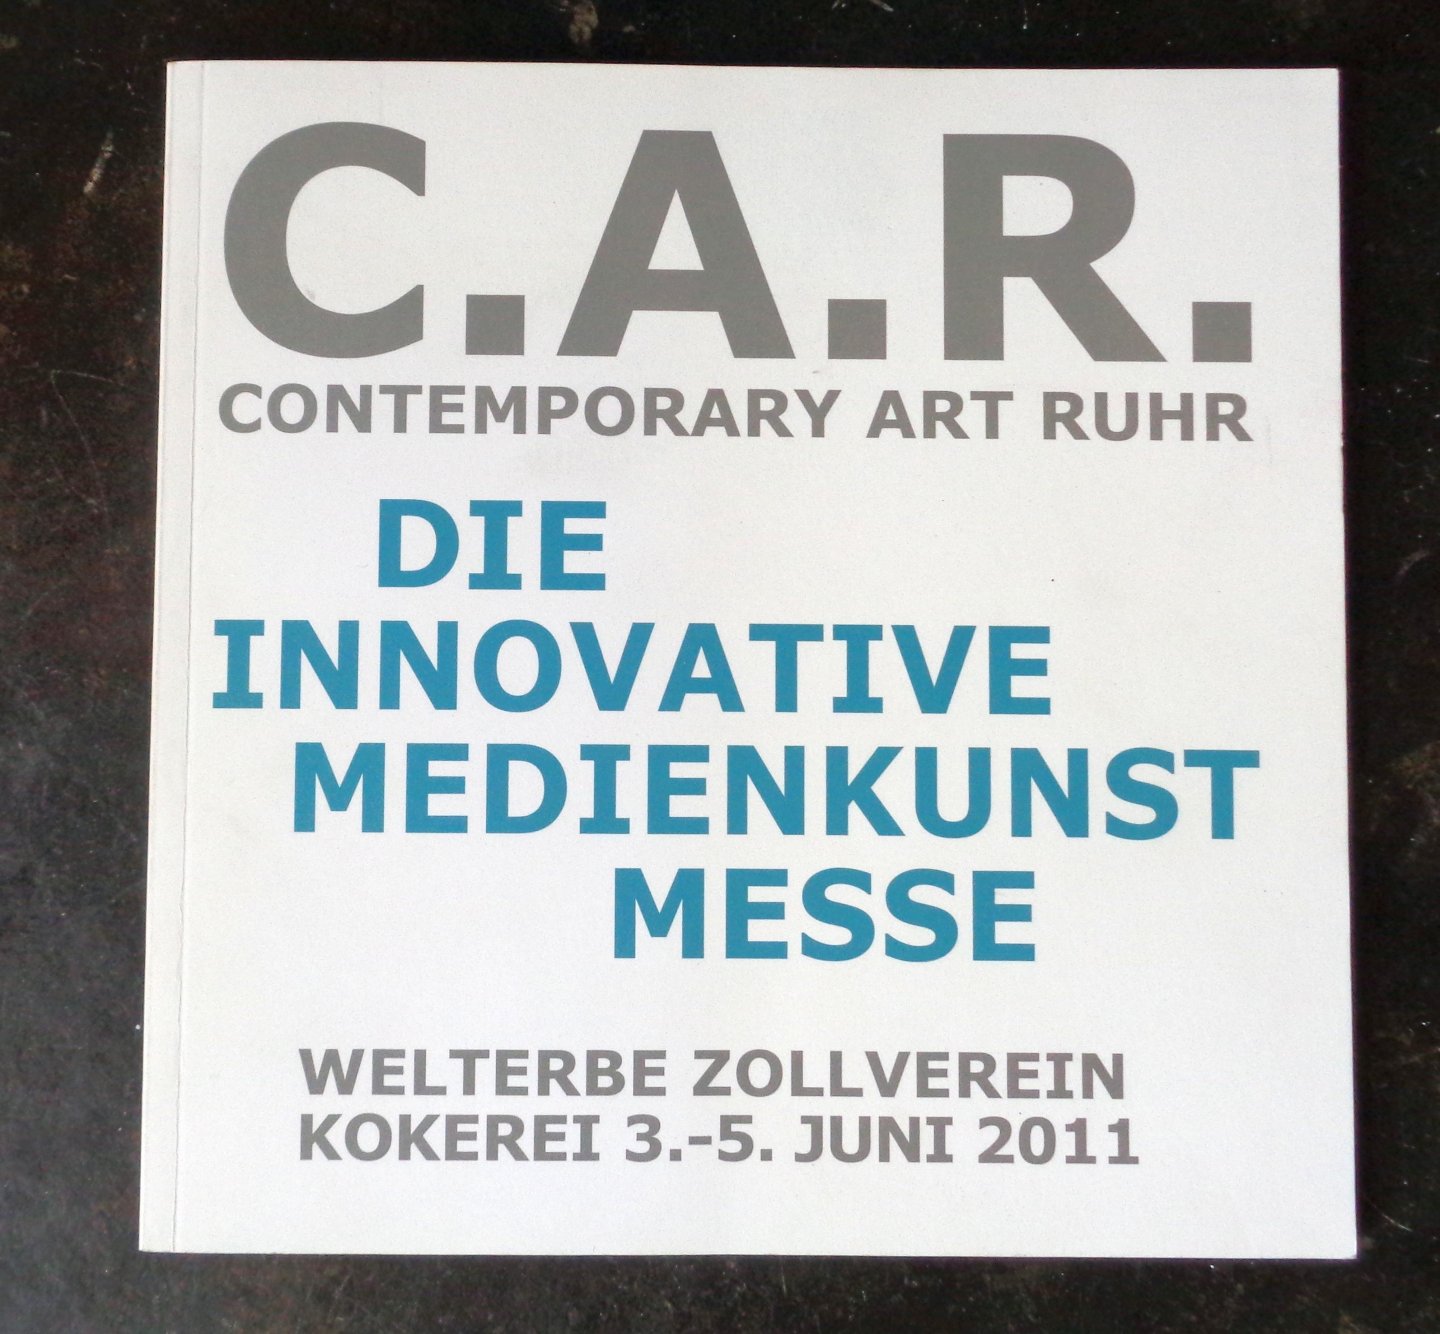  - Die innovative medienkunstmesse 2011